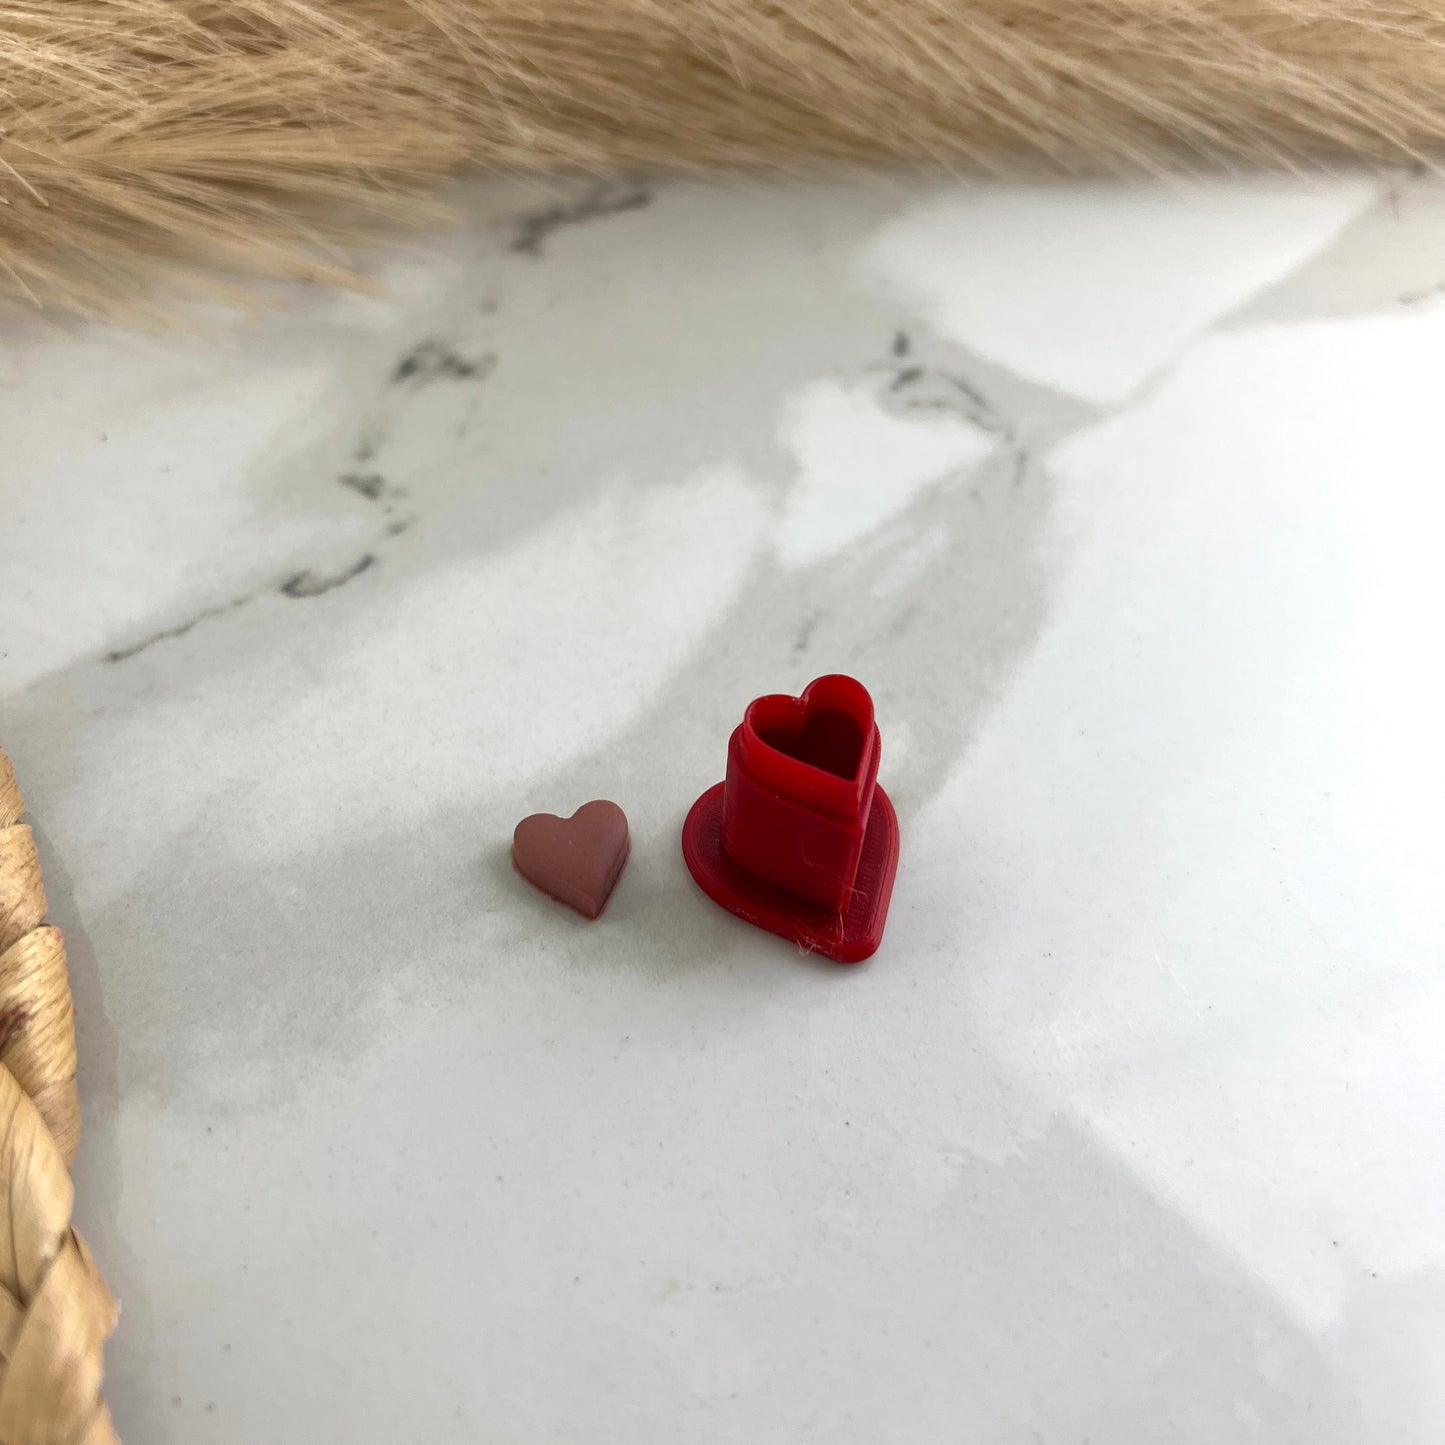 XS Heart Polymer Clay Cutter